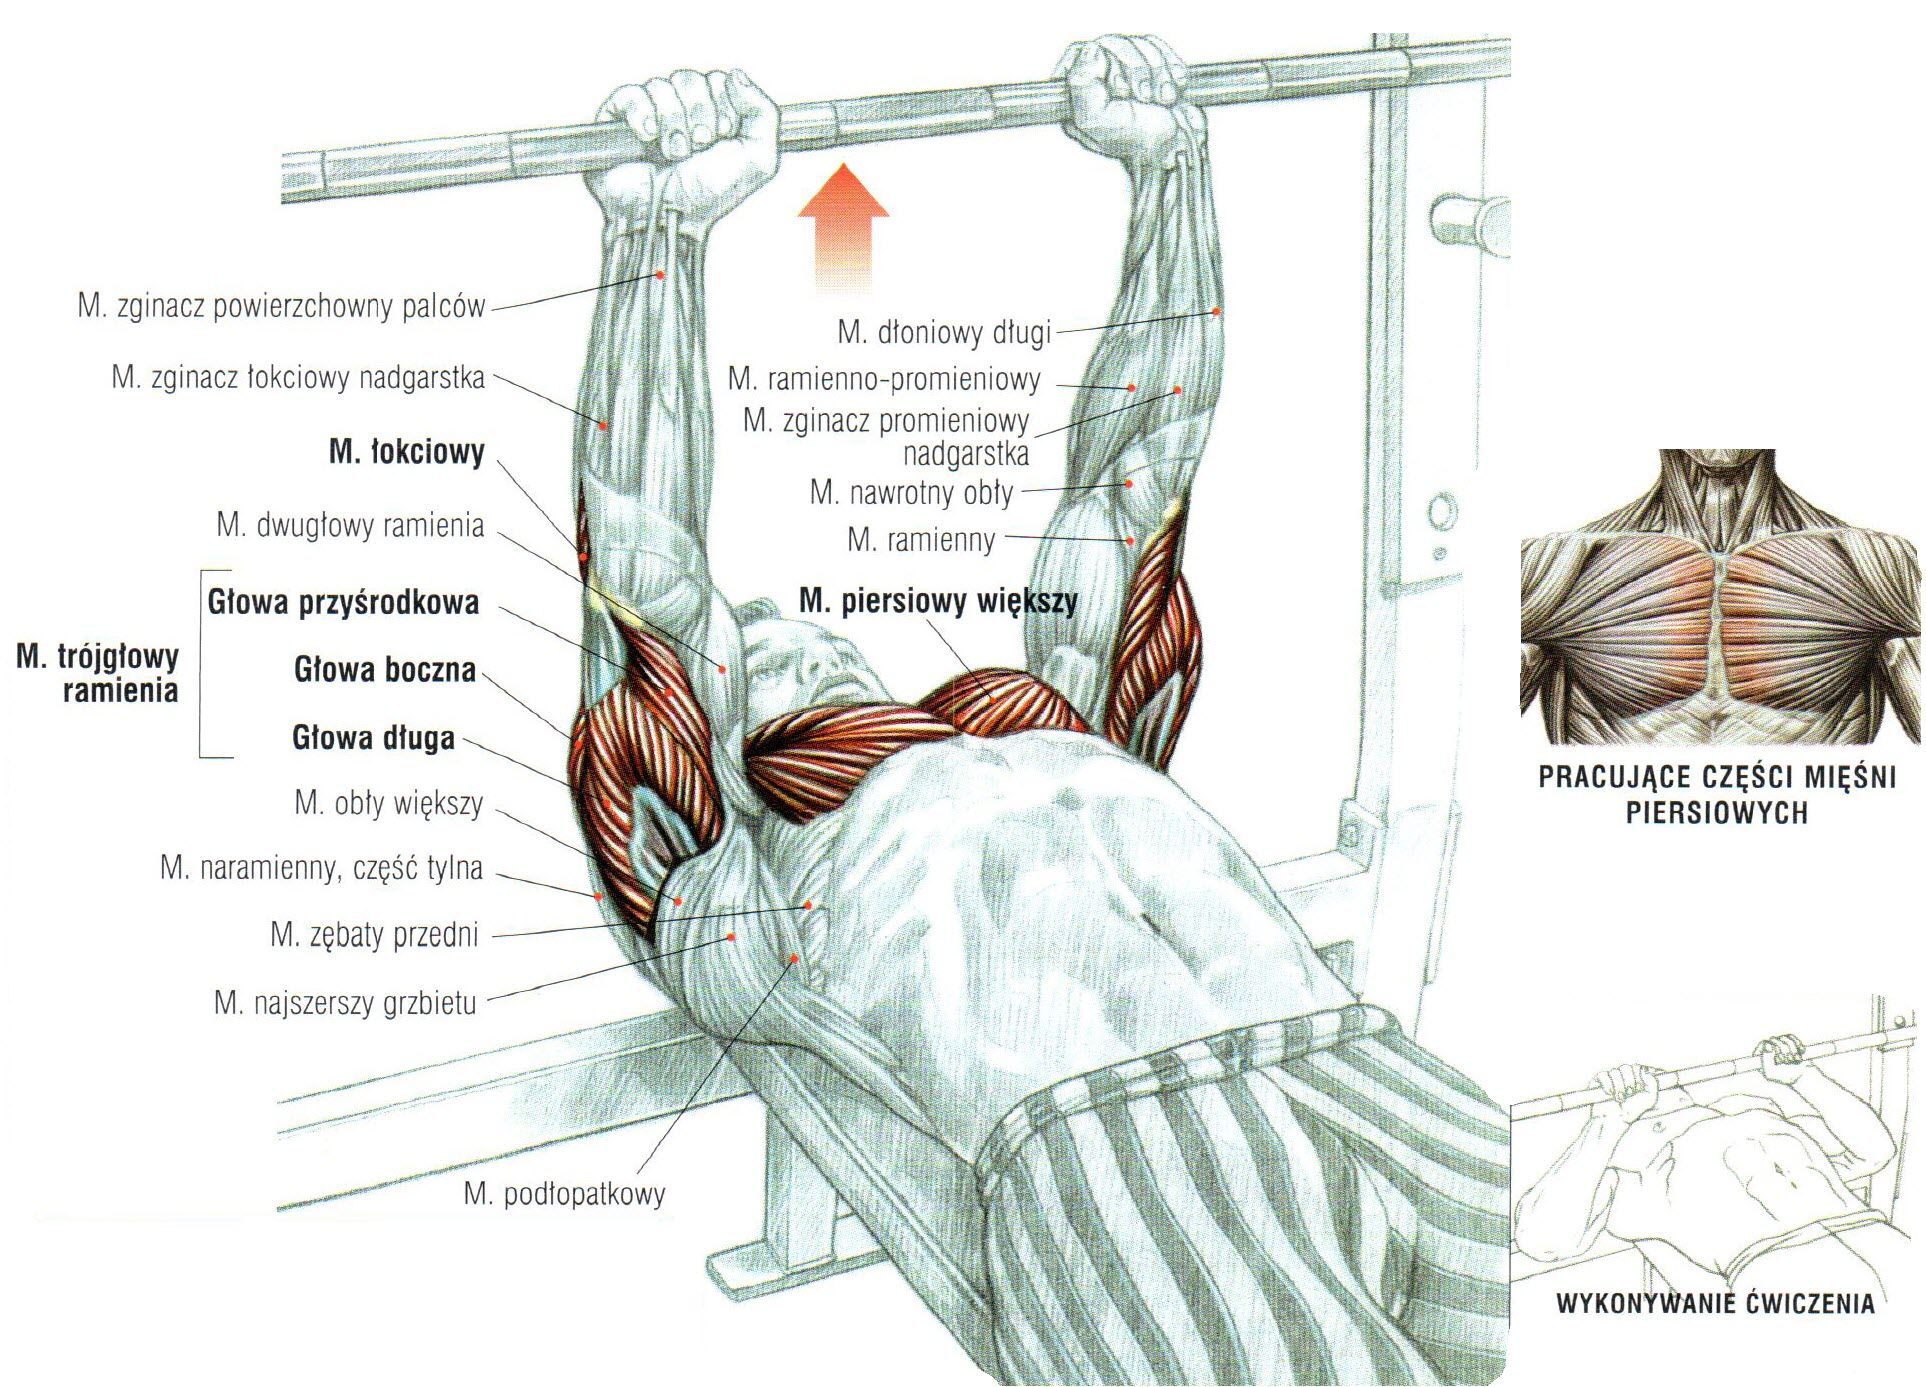 Wyciskanie sztangi w leżeniu na ławce poziomej wąskim uchwytem ćwiczenia na klate atlas ćwiczeń